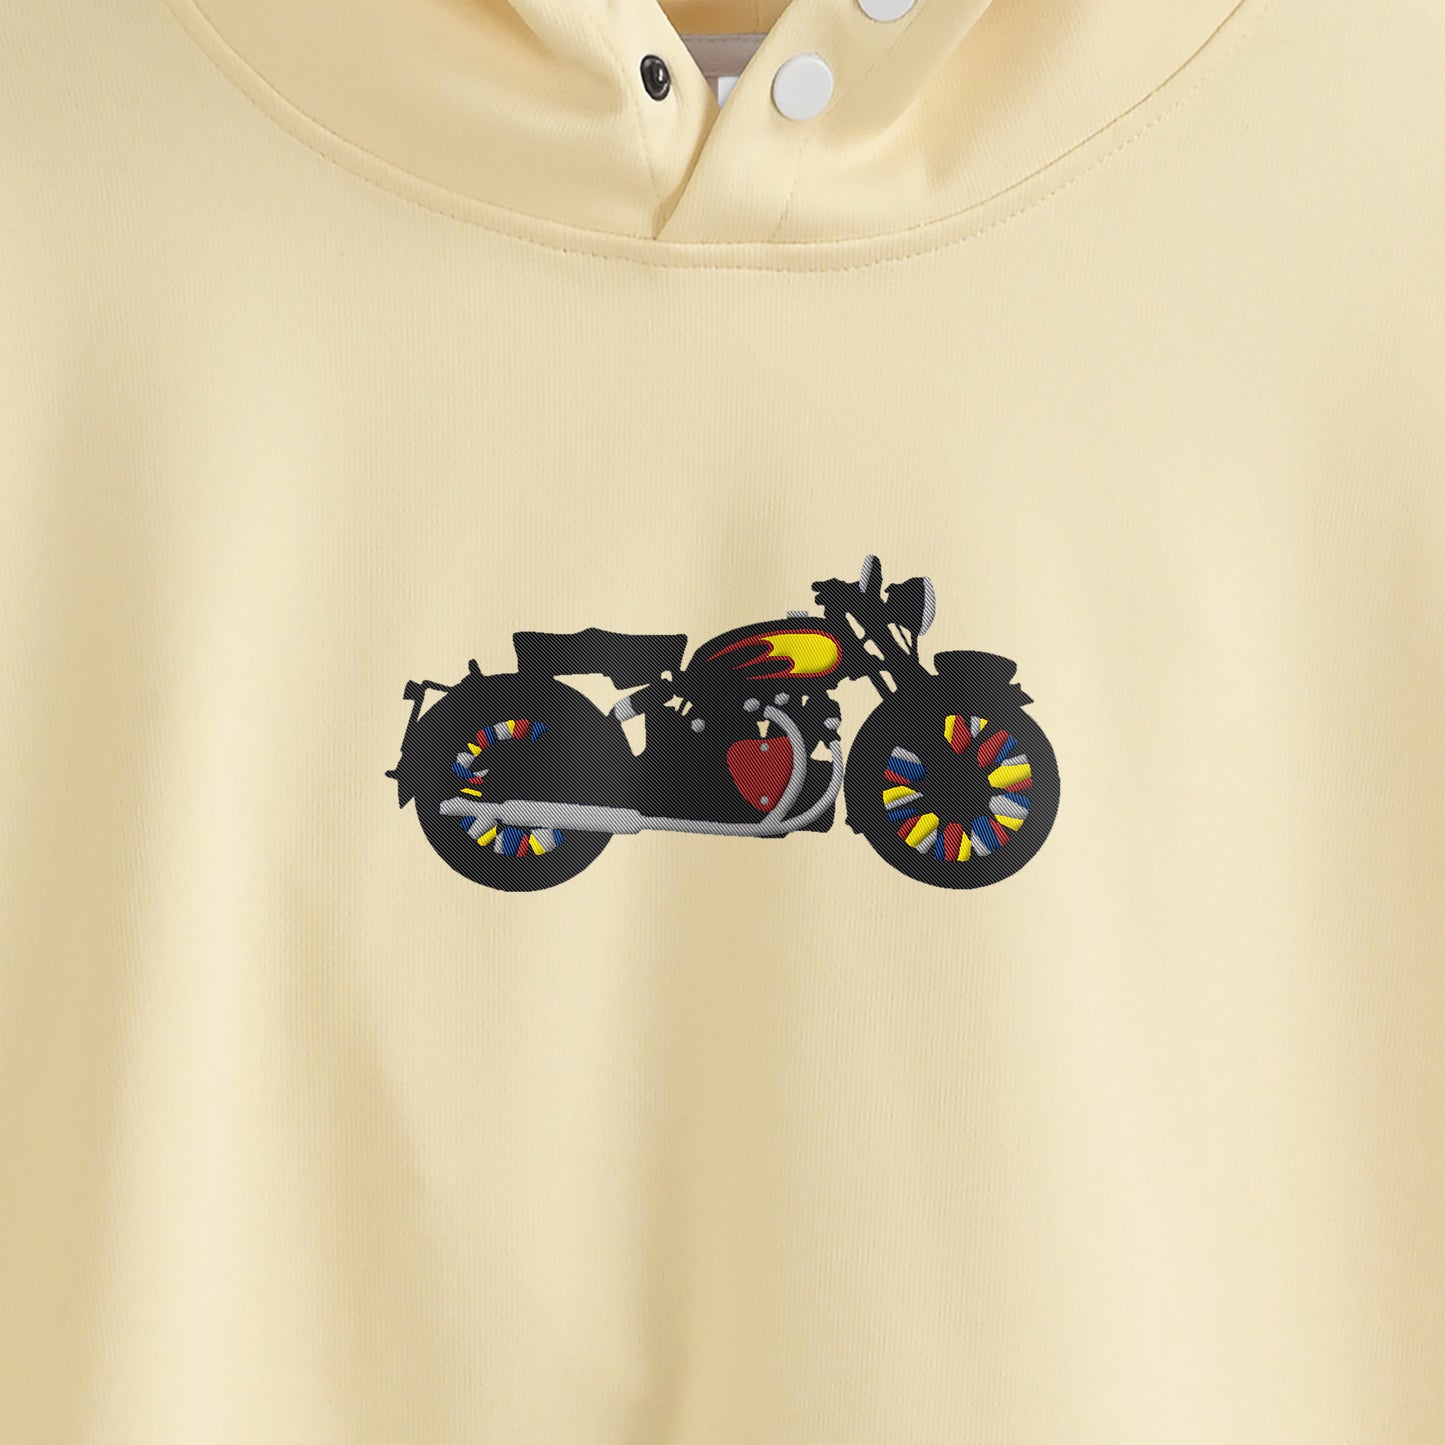 ヴィンテージバイク・ミッドサイズ刺繍 / スナップド・フーディ